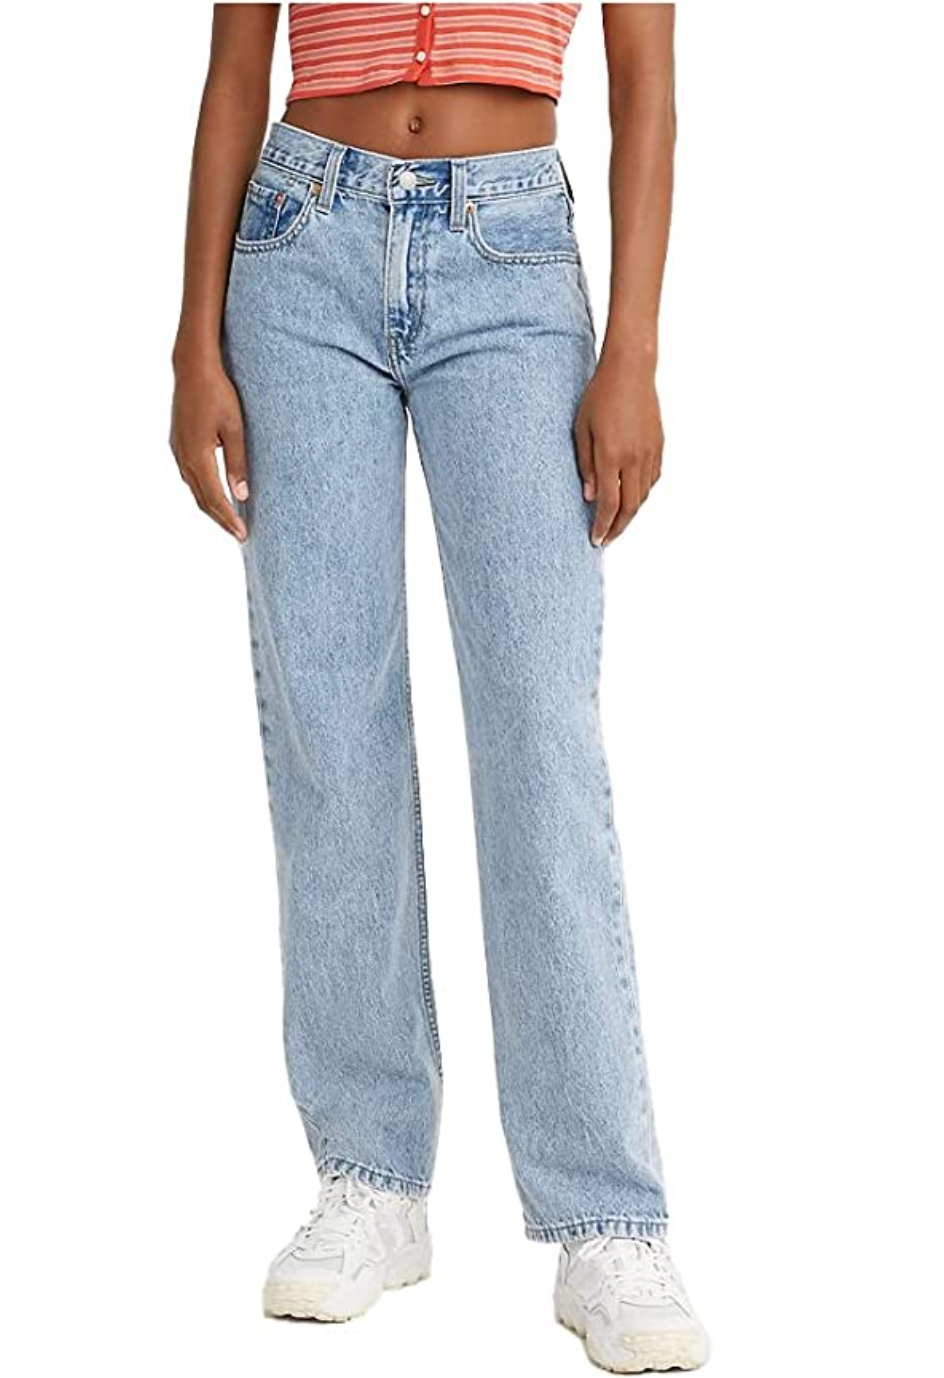 Levi's Women's Low Pro Jeans